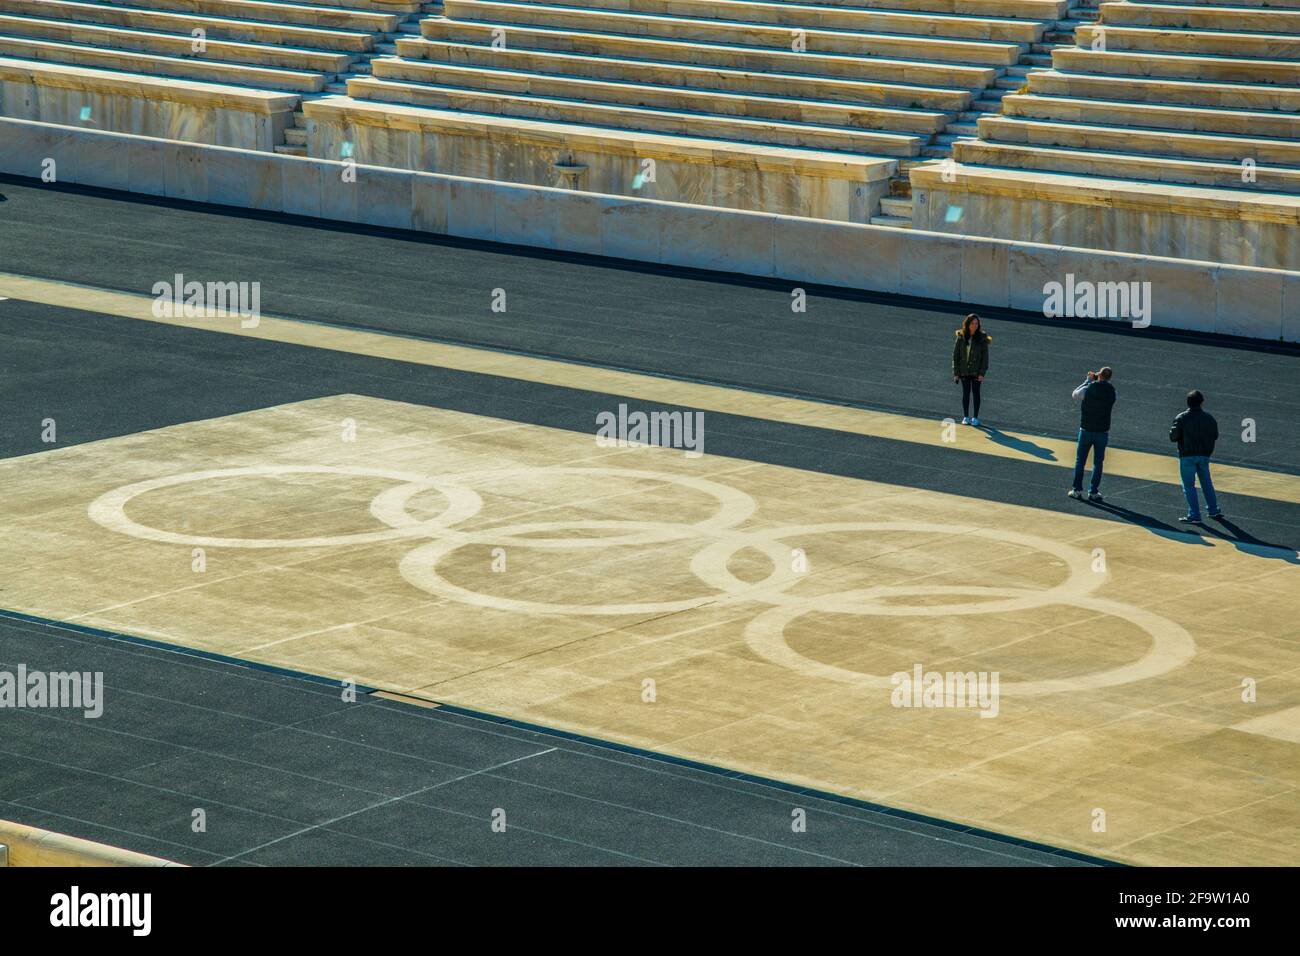 ATENAS, GRECIA, 10 DE DICIEMBRE de 2015: La gente está mirando el logotipo de los Juegos olímpicos dibujados en el estadio Panatenaico o kallimarmaro en Atenas Foto de stock